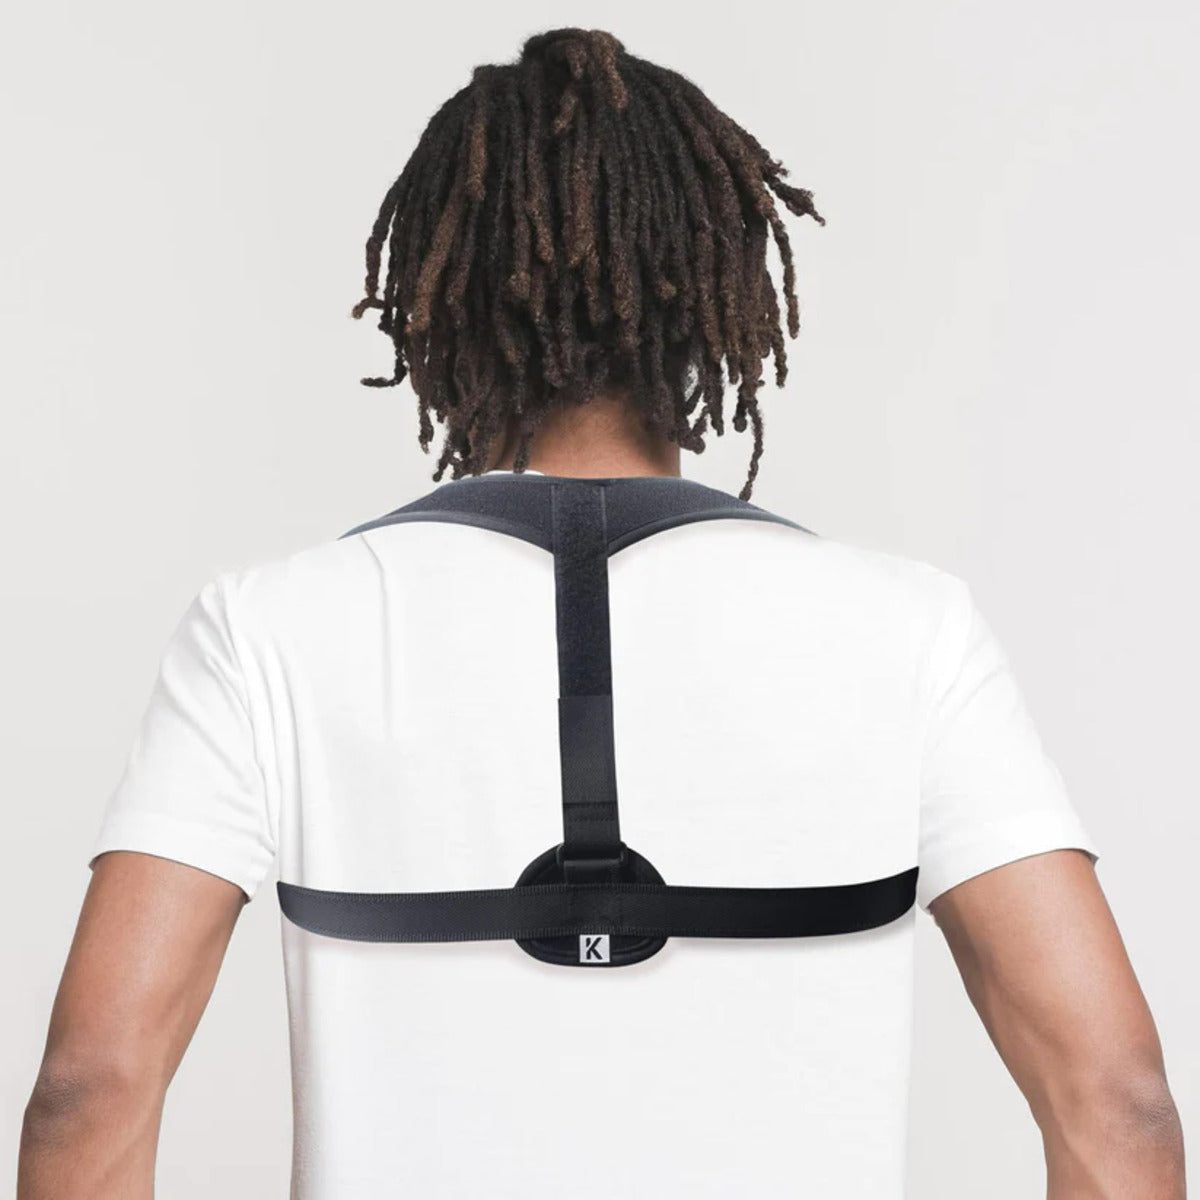 KEDLEY Posture Corrector for Men and Women | Adjustable Upper Back Brace for Clavicle Support